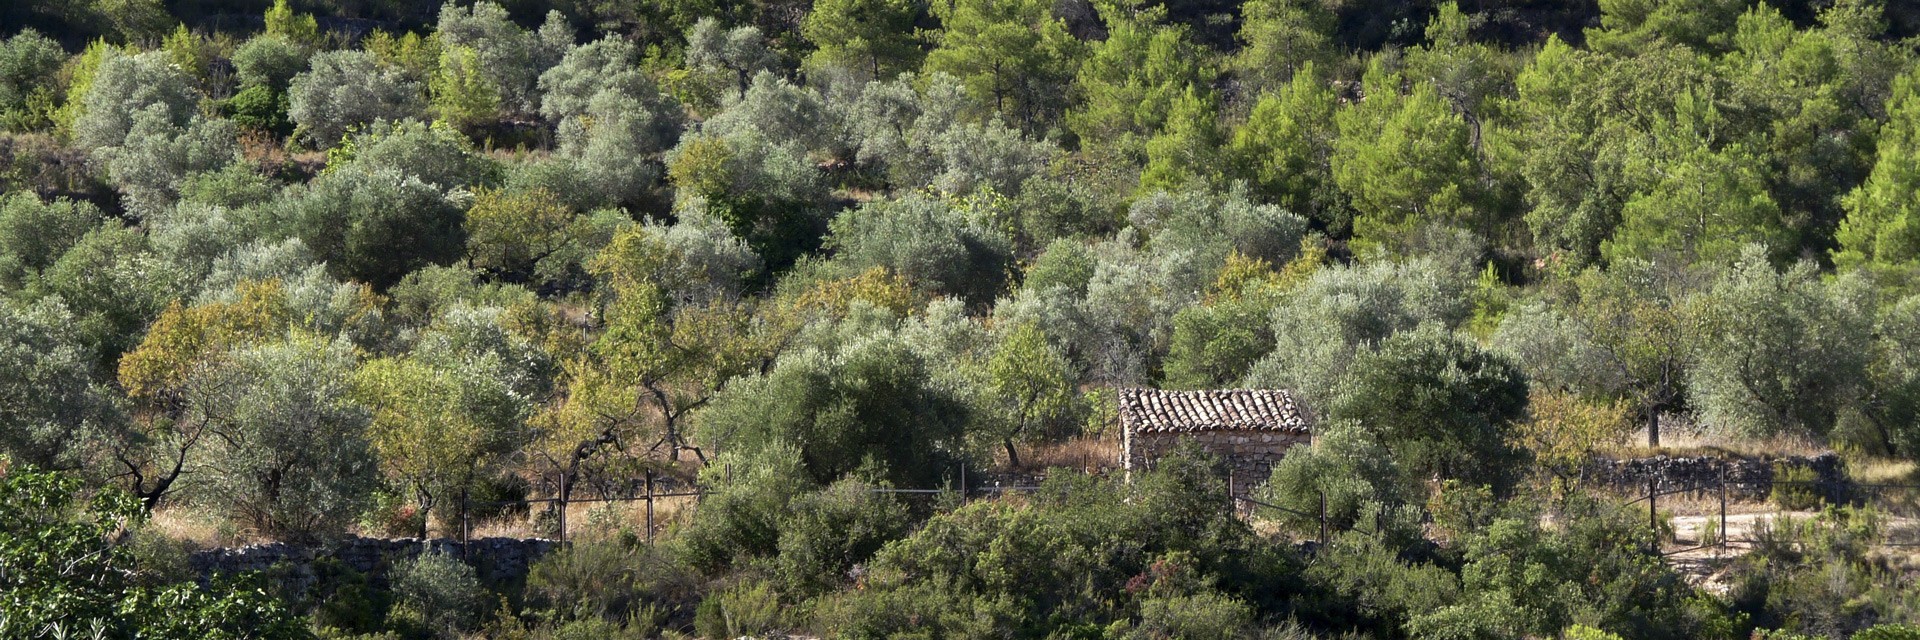 Olivar de muntanya i biodiversitat a Les Garrigues (Lleida)